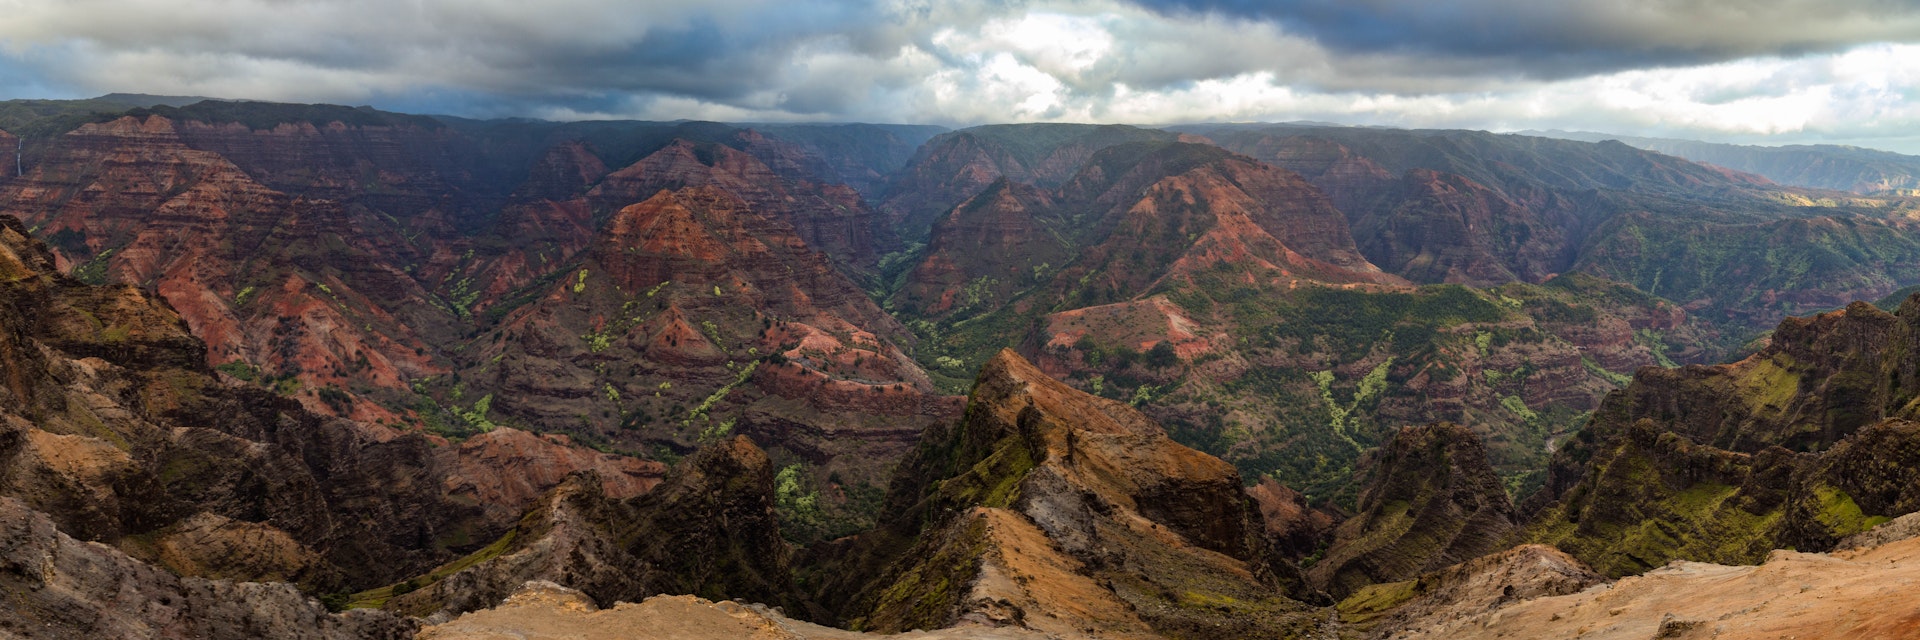 Panorama of Waimea Canyon, Kauai.